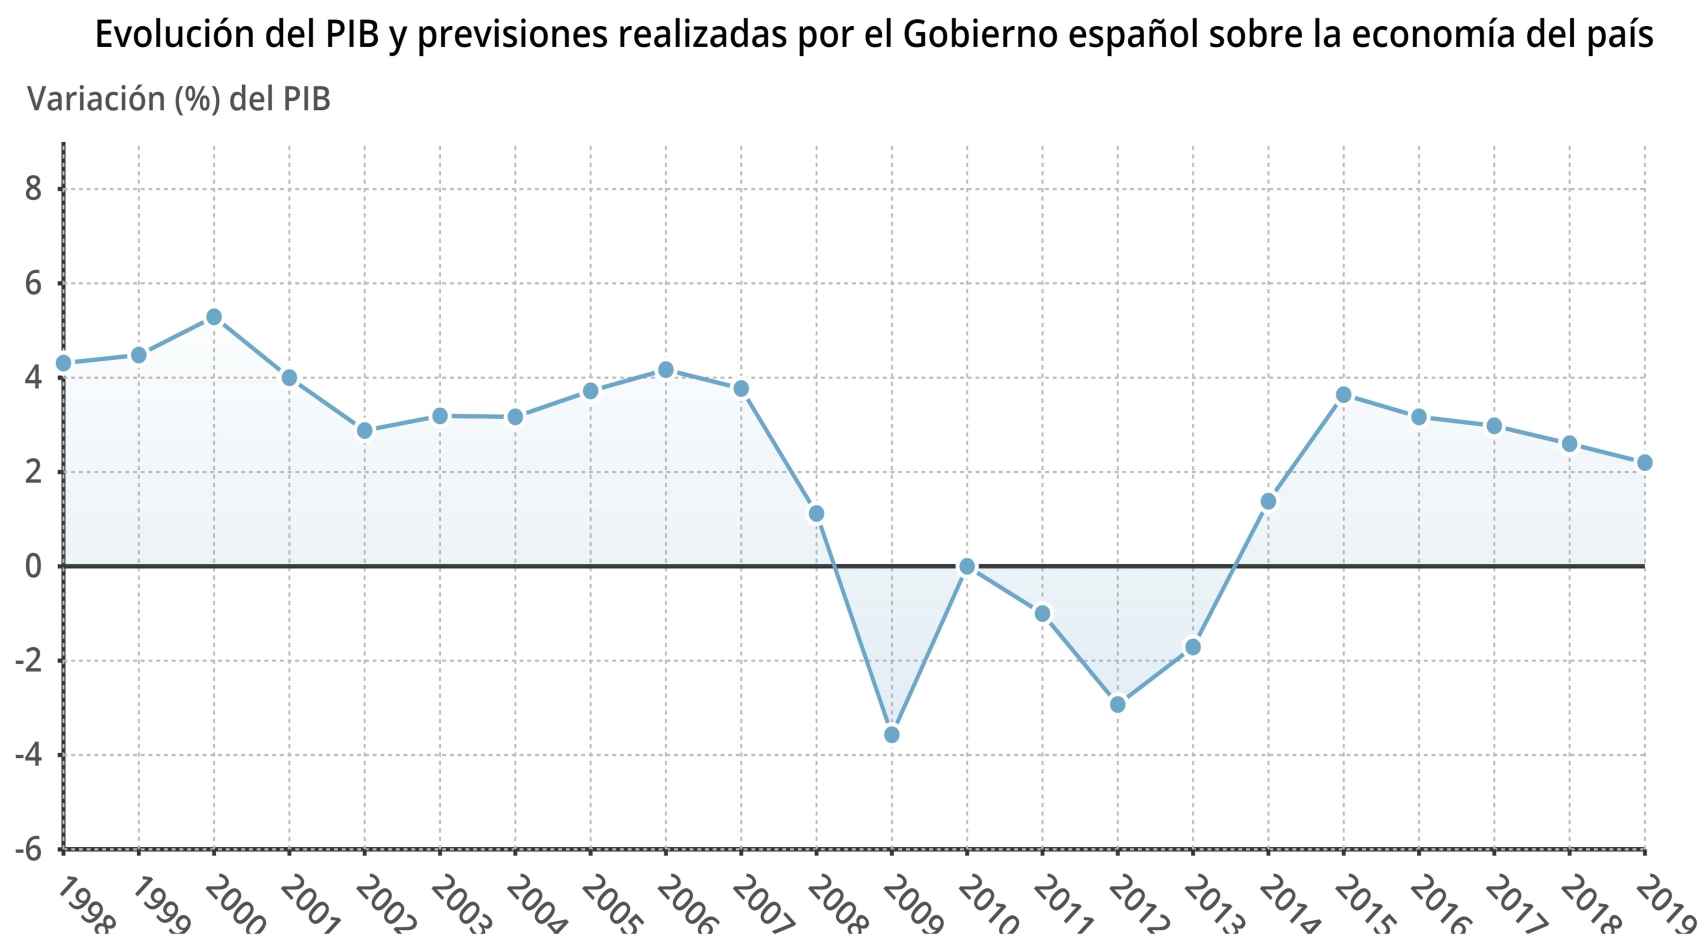 Previsiones de crecimiento de la economía española